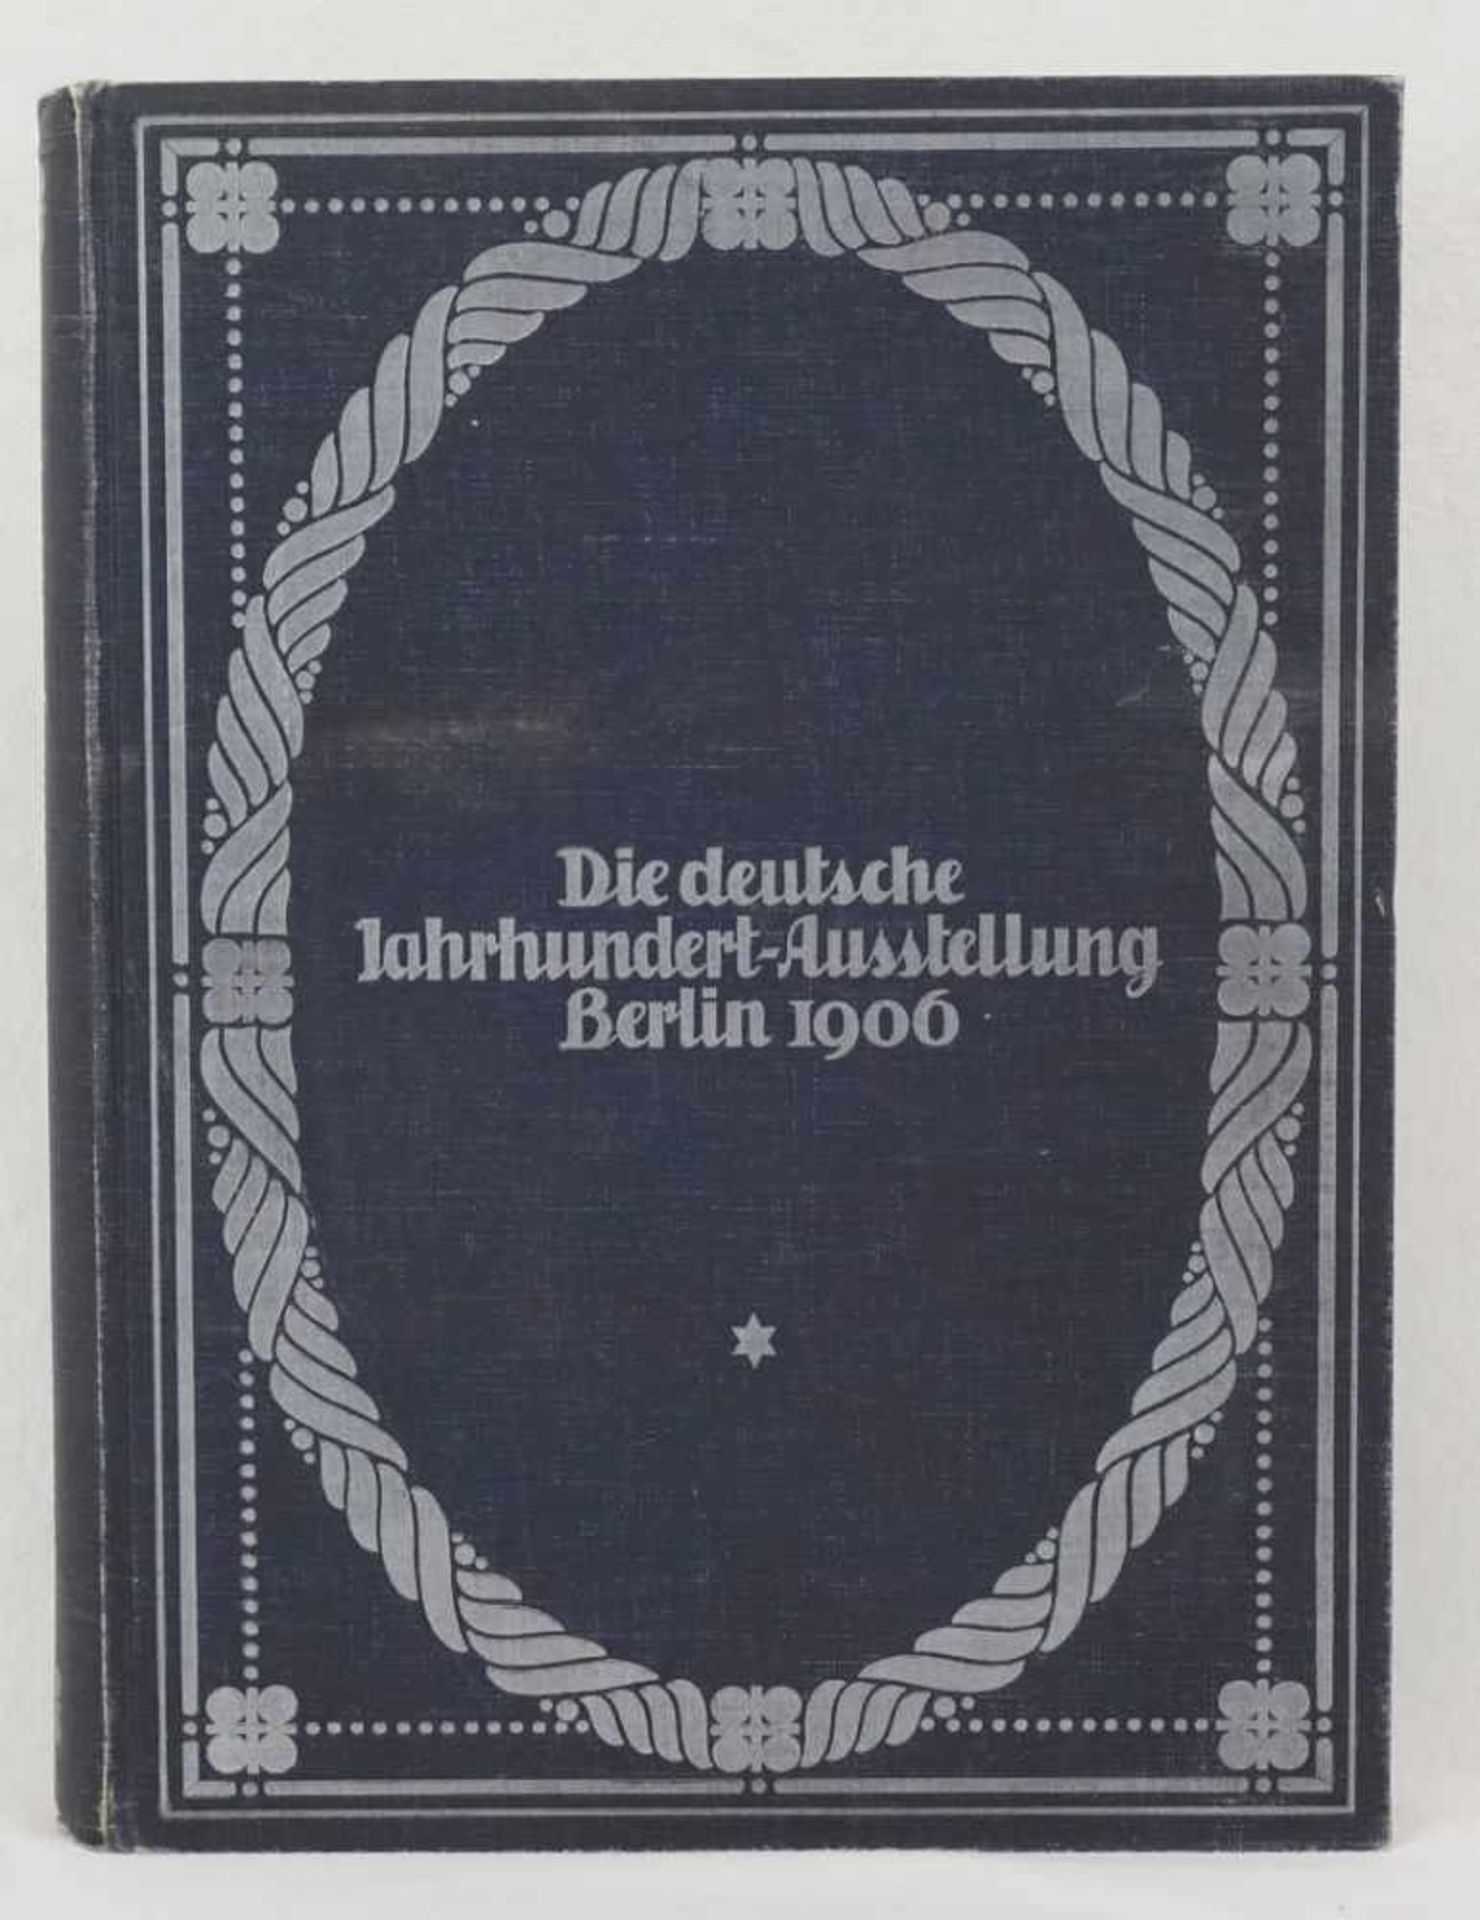 Hugo von Tschudi, "Die deutsche Jahrhundert-Ausstellung Berlin 1906"